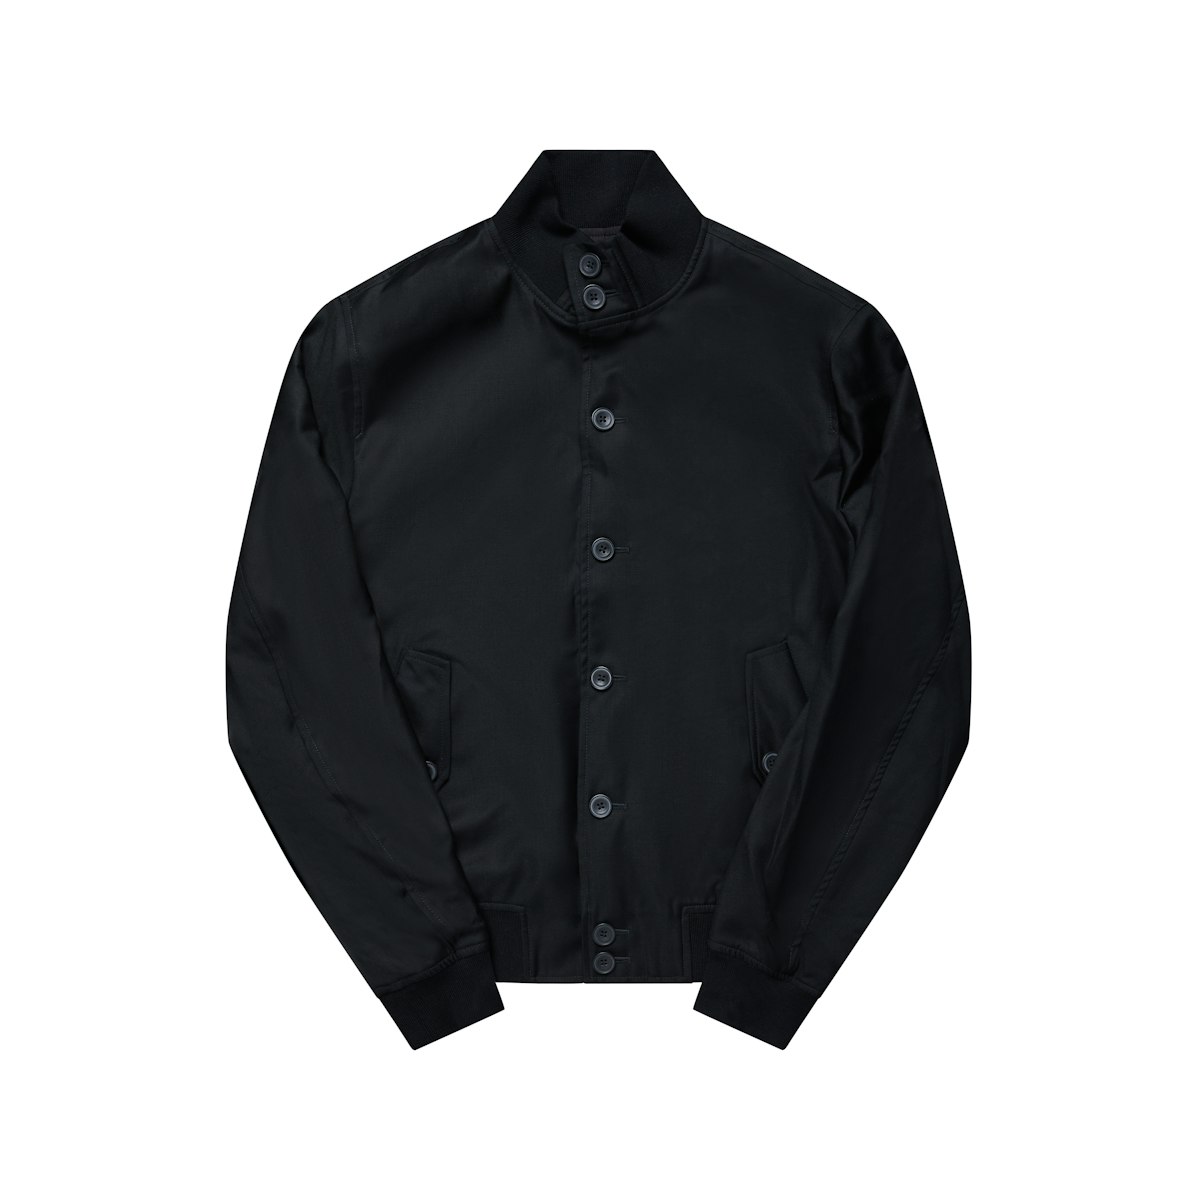 The Regent Black Harrington Wool Jacket